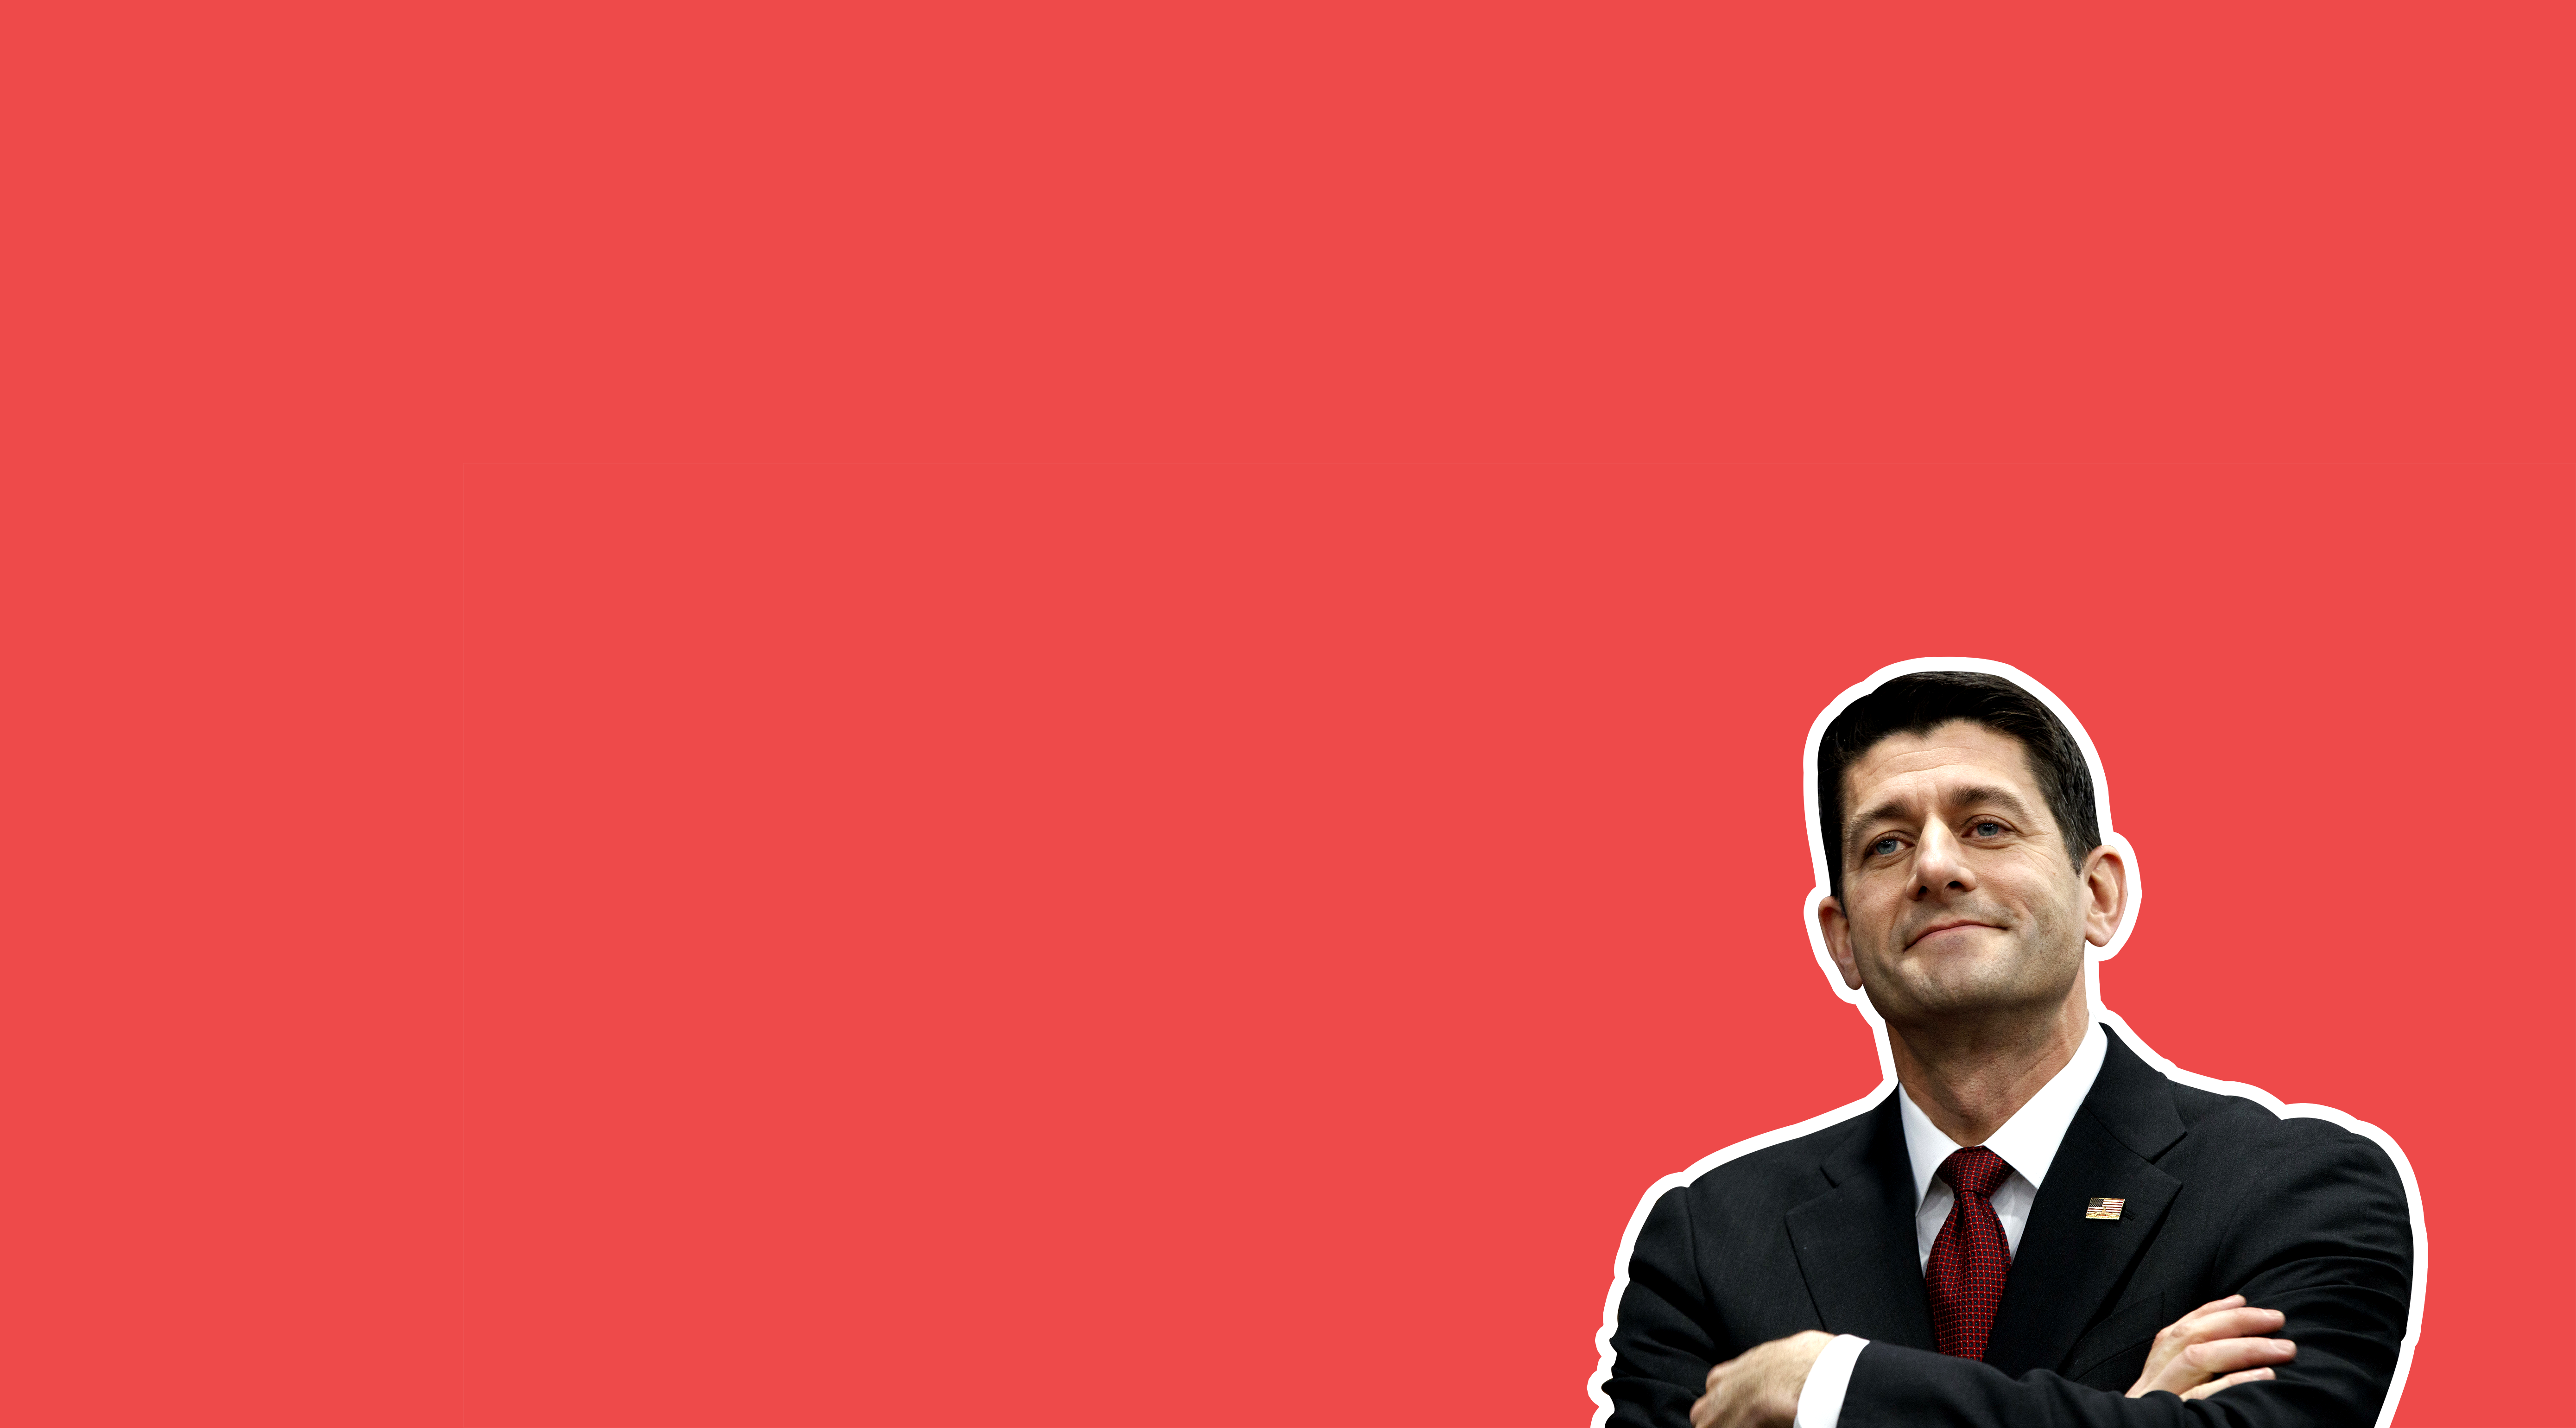 Speaker of the House Paul Ryan.